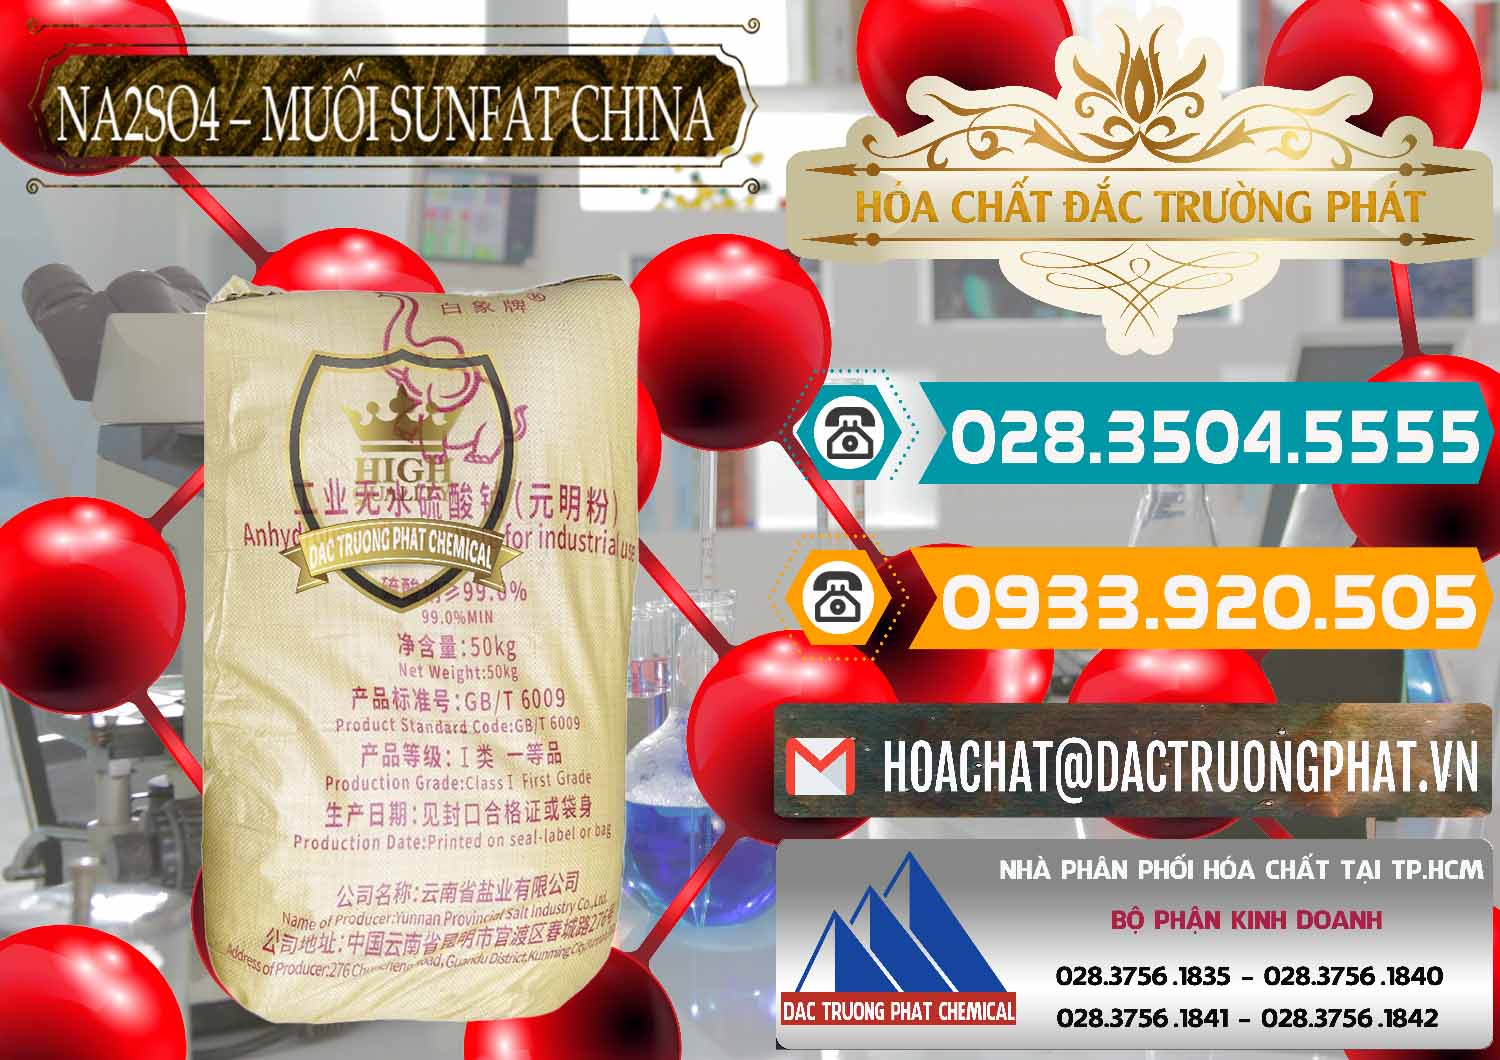 Chuyên bán ( cung ứng ) Sodium Sulphate - Muối Sunfat Na2SO4 Logo Con Voi Trung Quốc China - 0409 - Đơn vị phân phối ( cung cấp ) hóa chất tại TP.HCM - congtyhoachat.vn